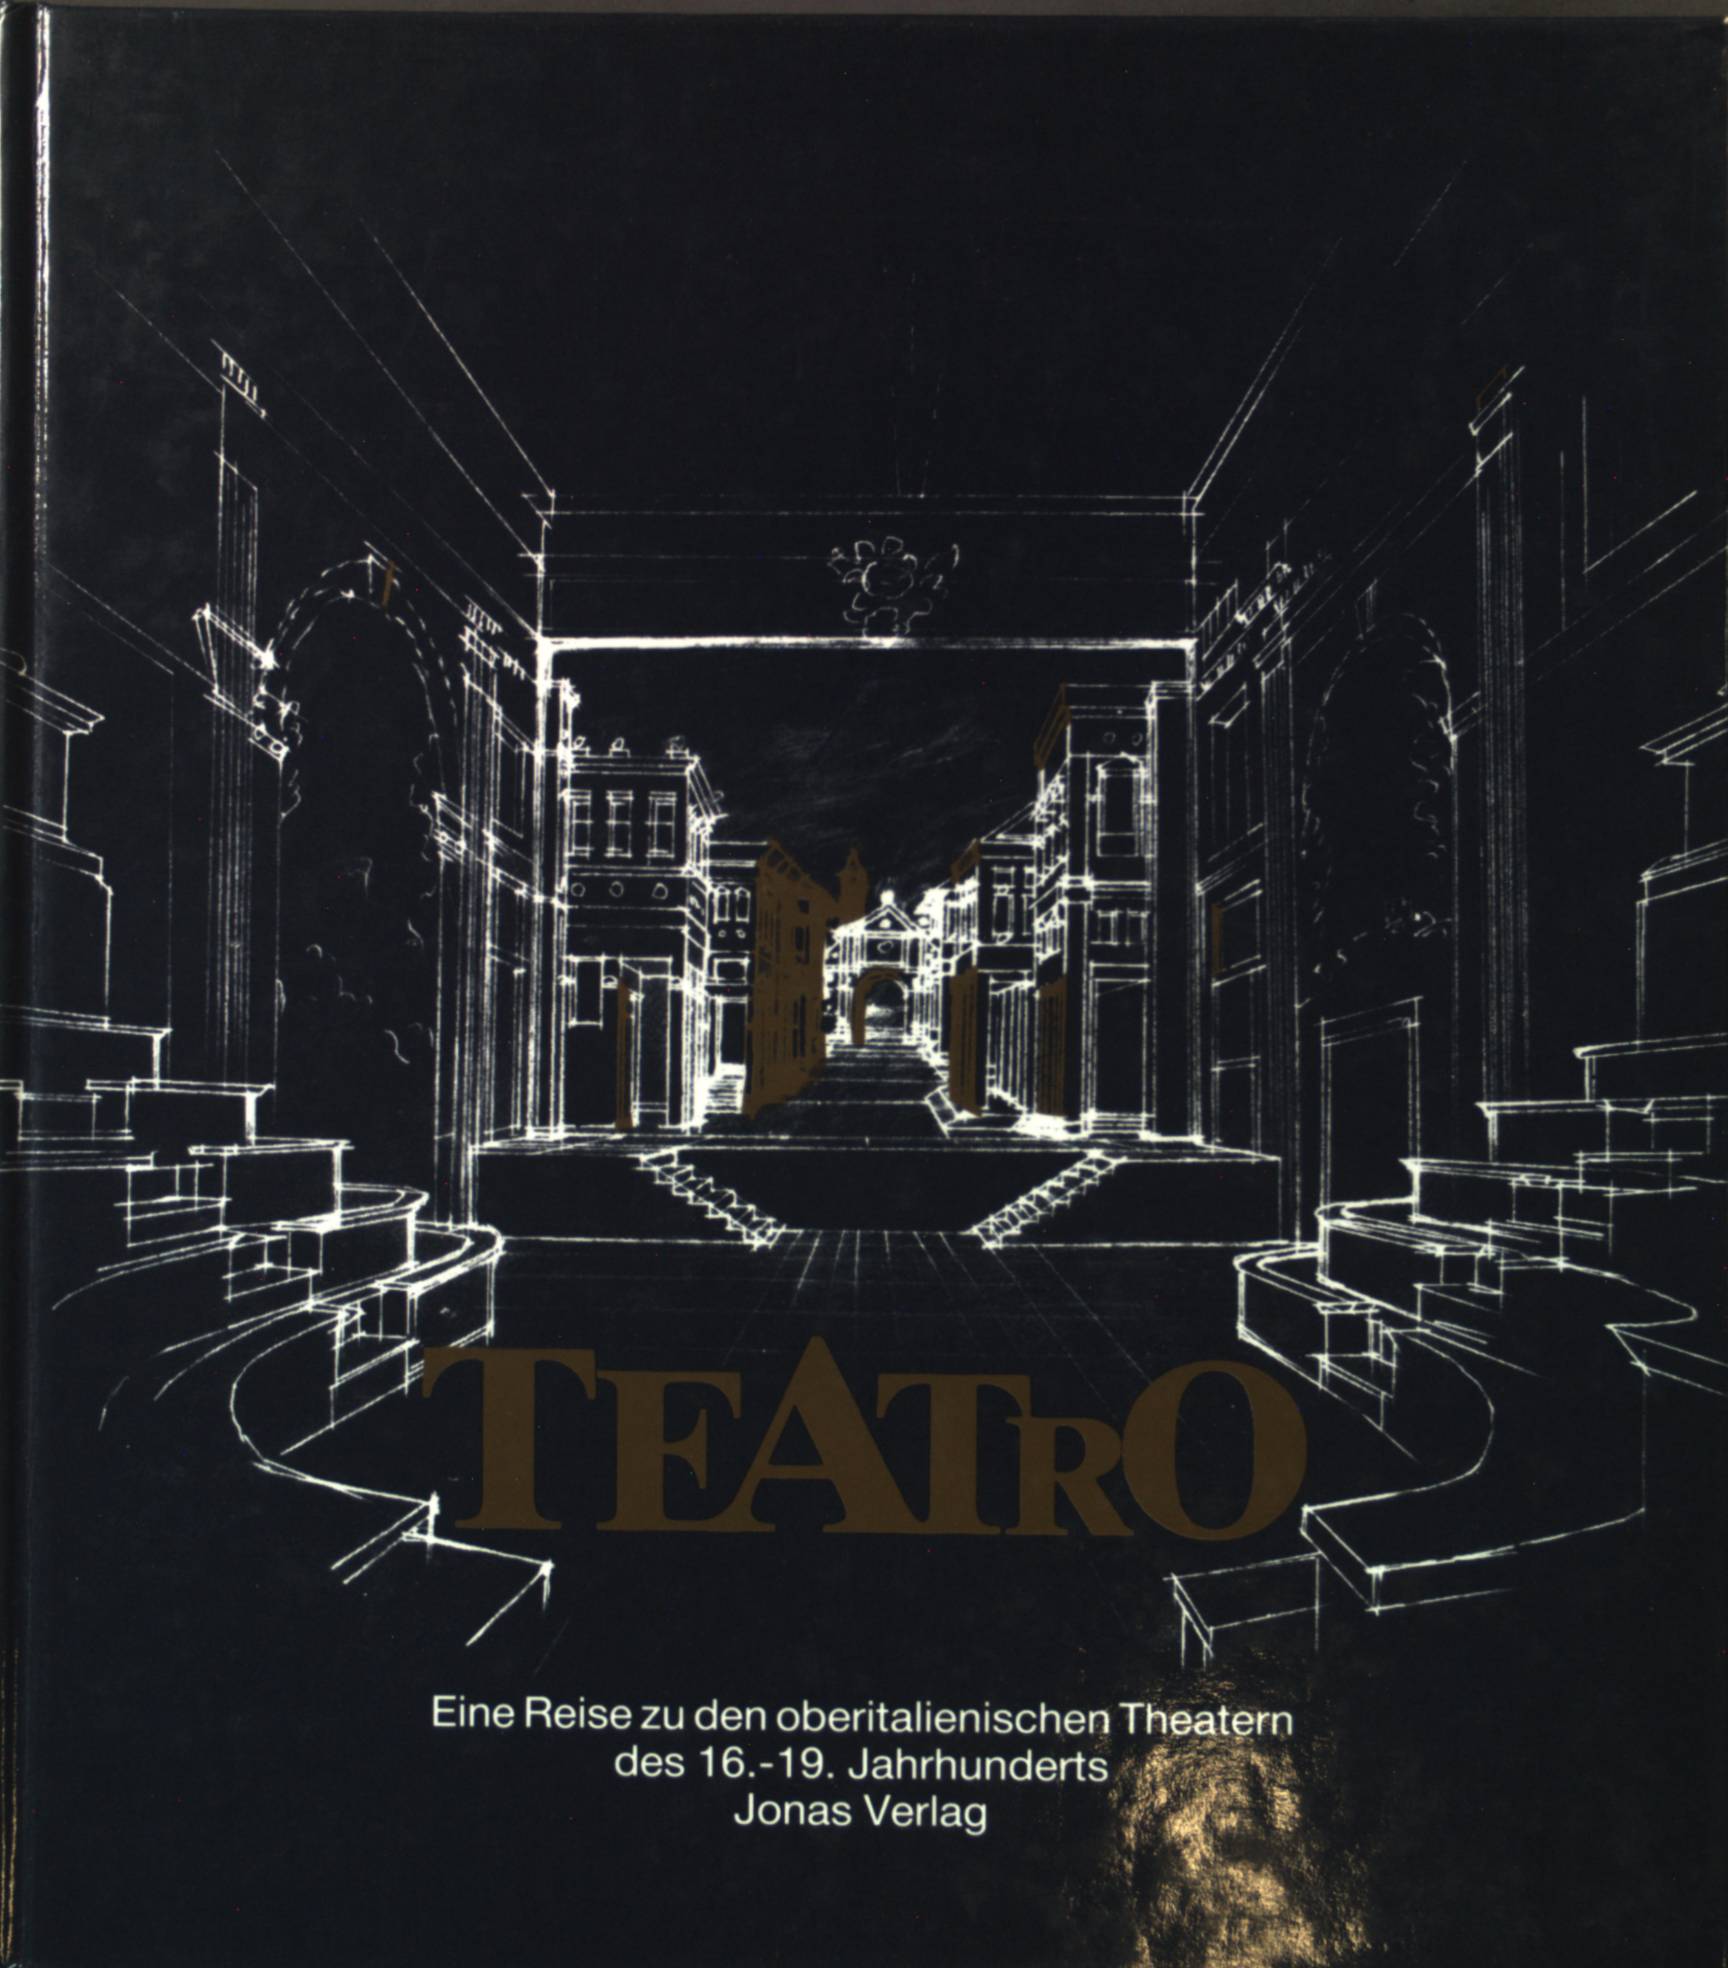 Teatro. Eine Reise zu den oberitalienischen Theatern des 16.-19. Jahrhunderts